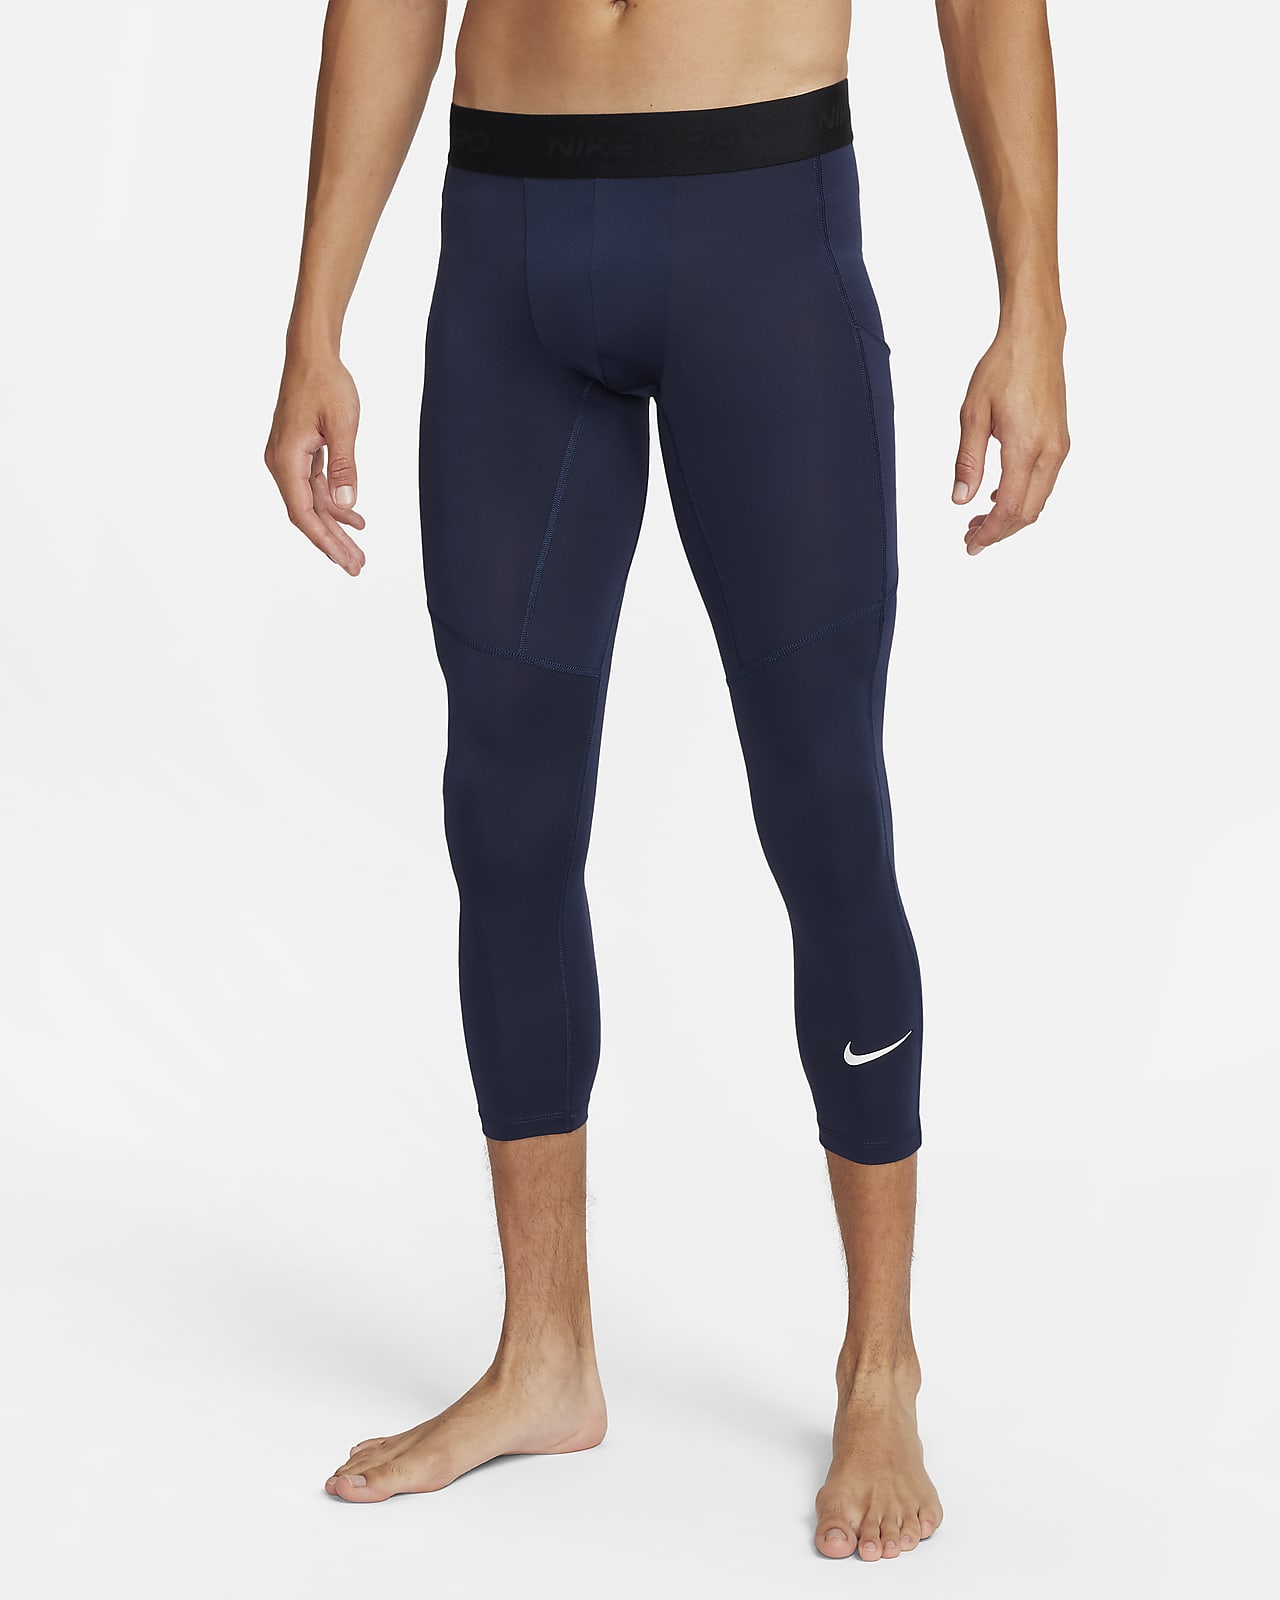 Nike Pro Girls Tights (Black-White), Girls Pants, Junior Clothing